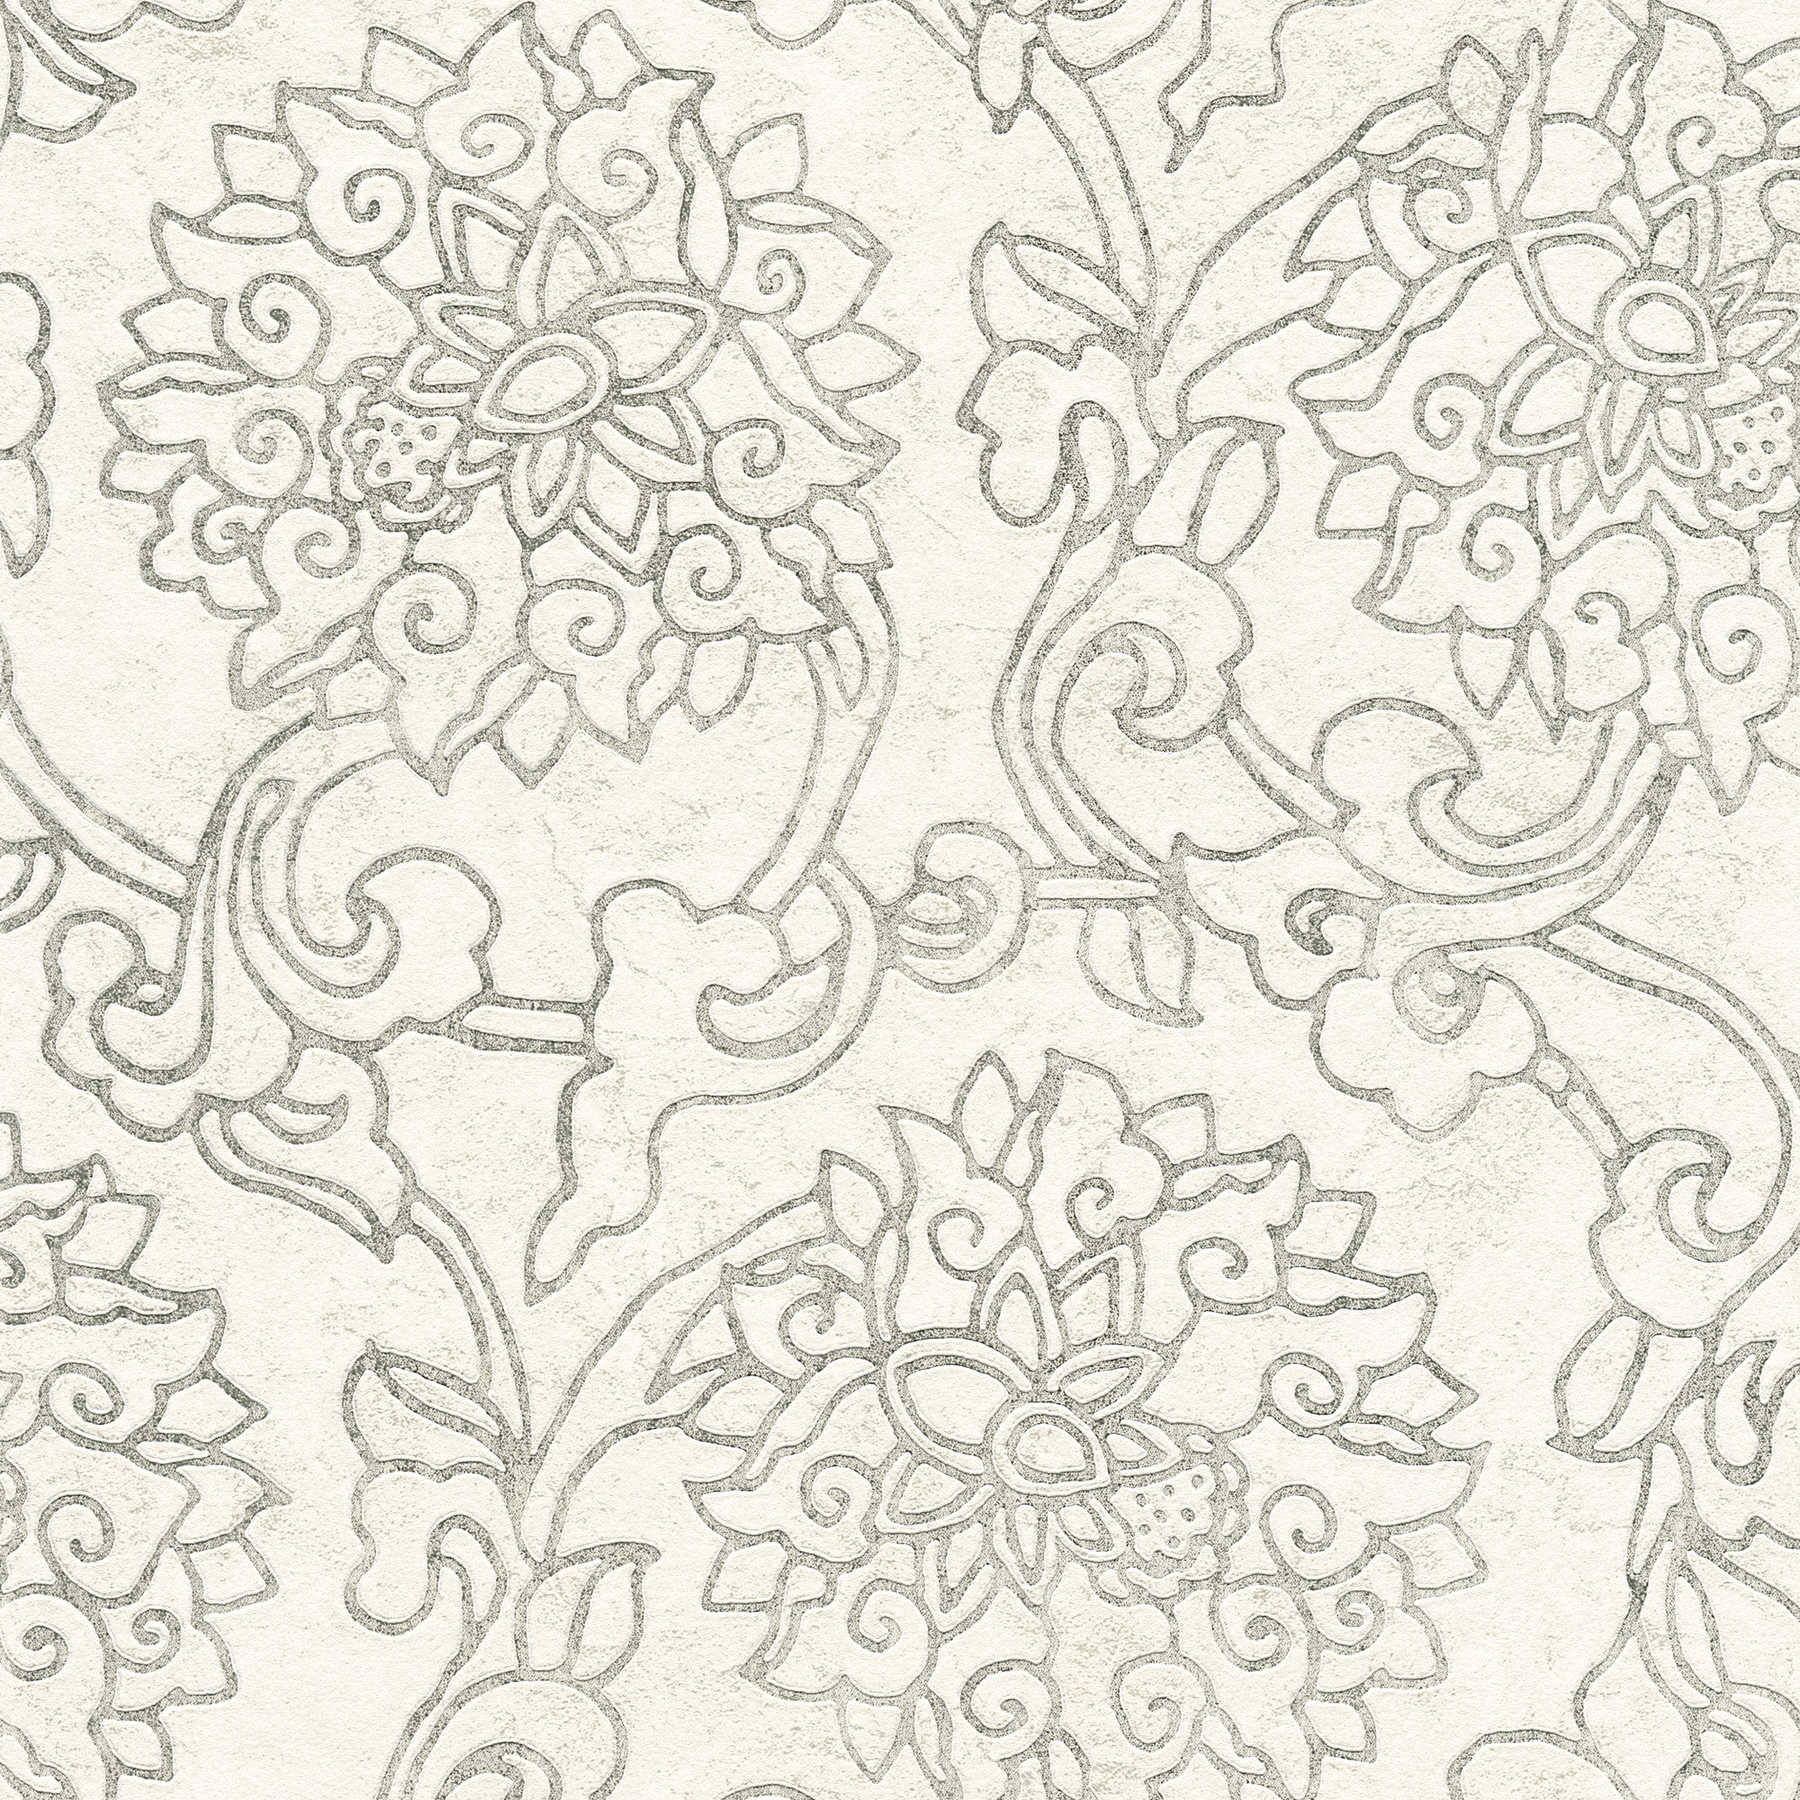             Florale Ornamenttapete im Asian Style mit Goldakzenten – Weiß, Silber, Grau
        